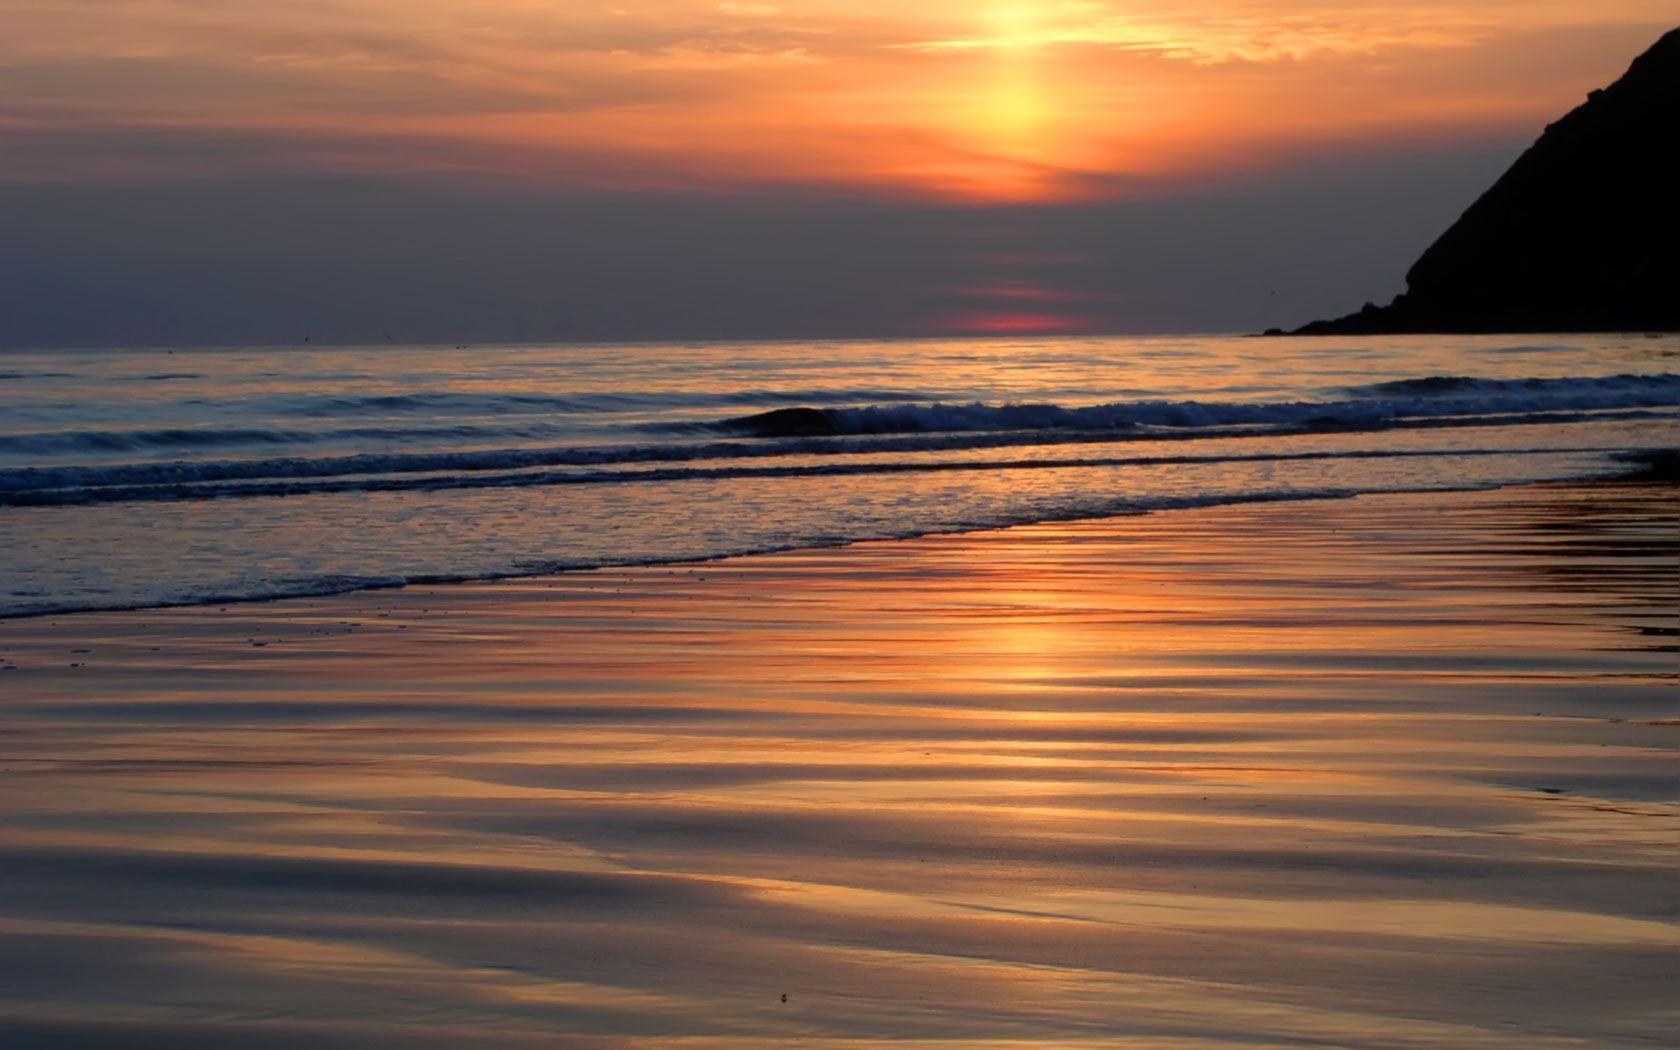 Sandy Beach Sunset Wallpaper